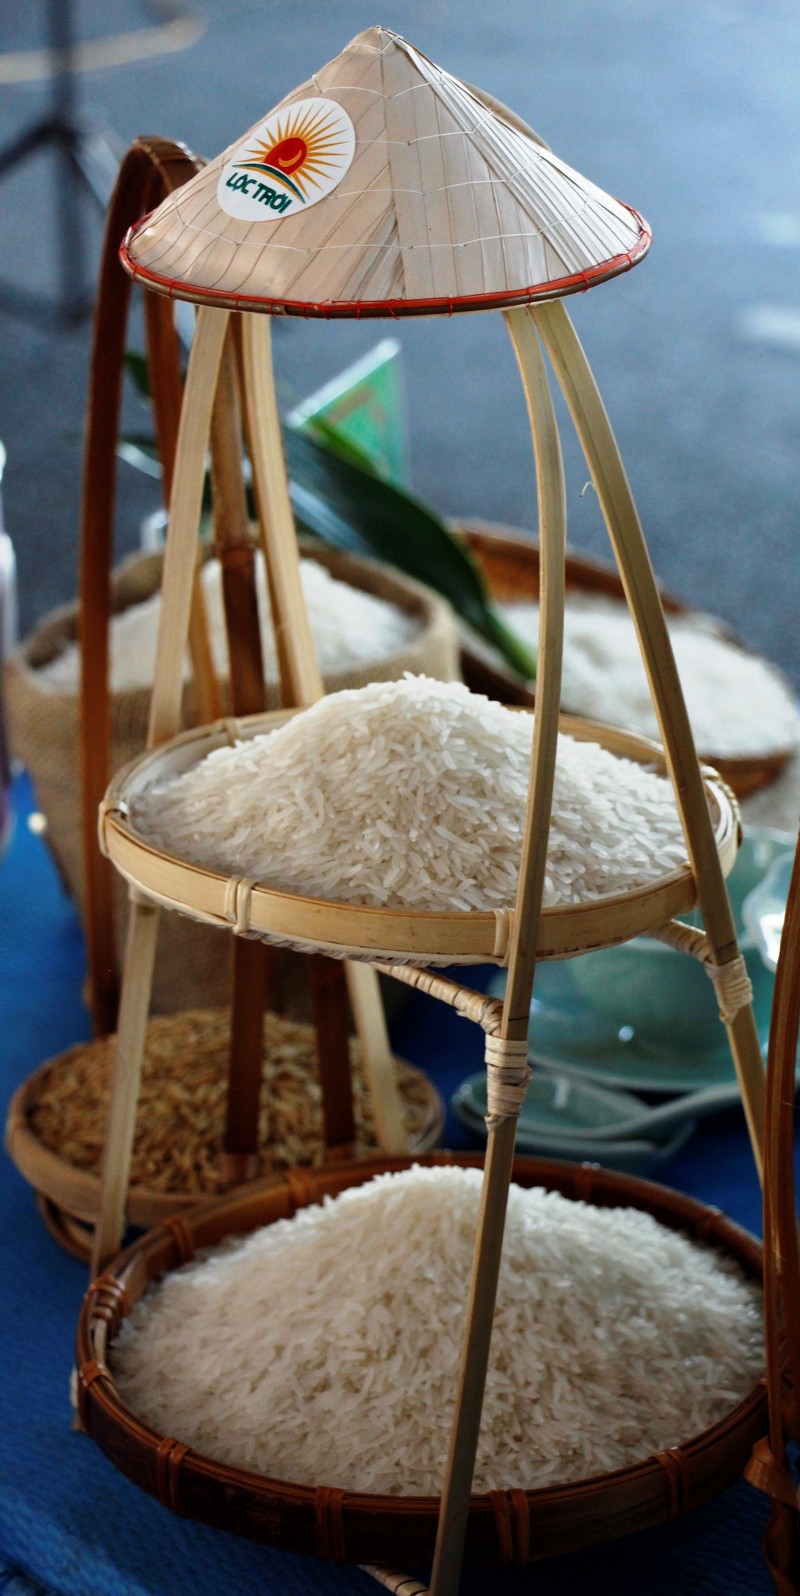 Hội thi là nơi để các đơn vị giới thiệu, quảng bá một cách sinh động, đầy đủ về sản phẩm gạo do mình làm ra.